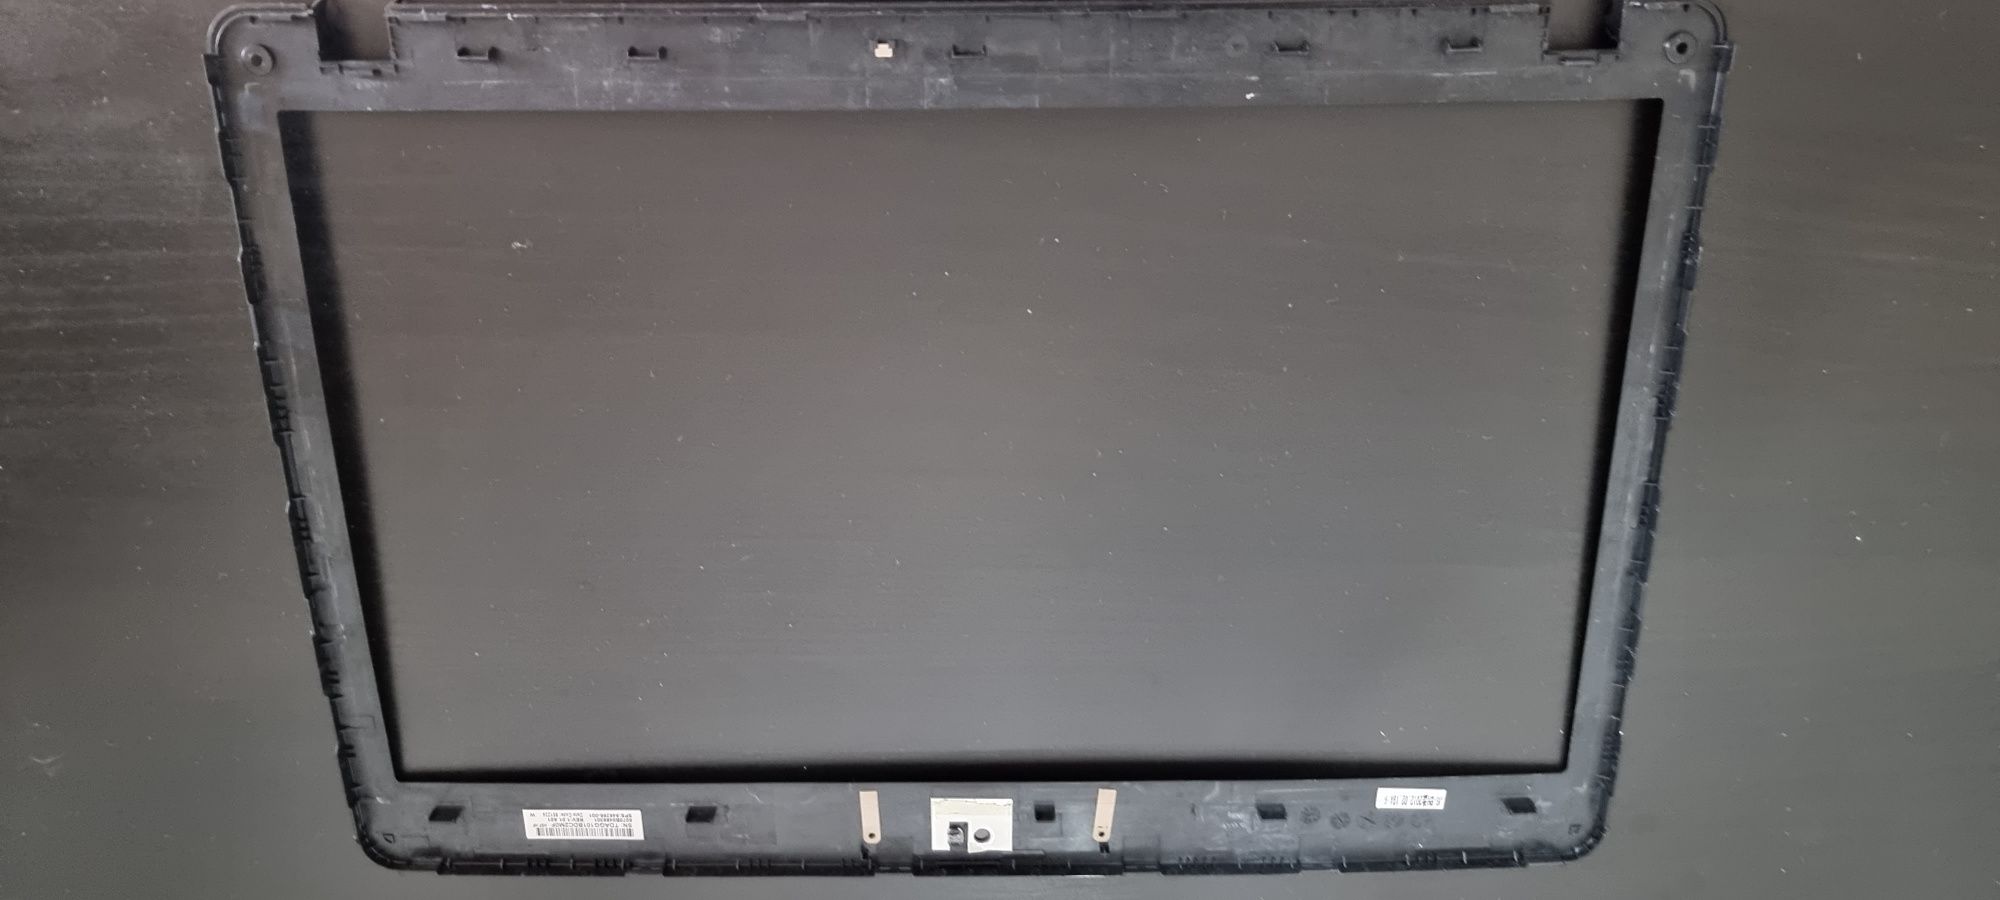 Ramă display laptop HP Probook 4530s, capac spate.